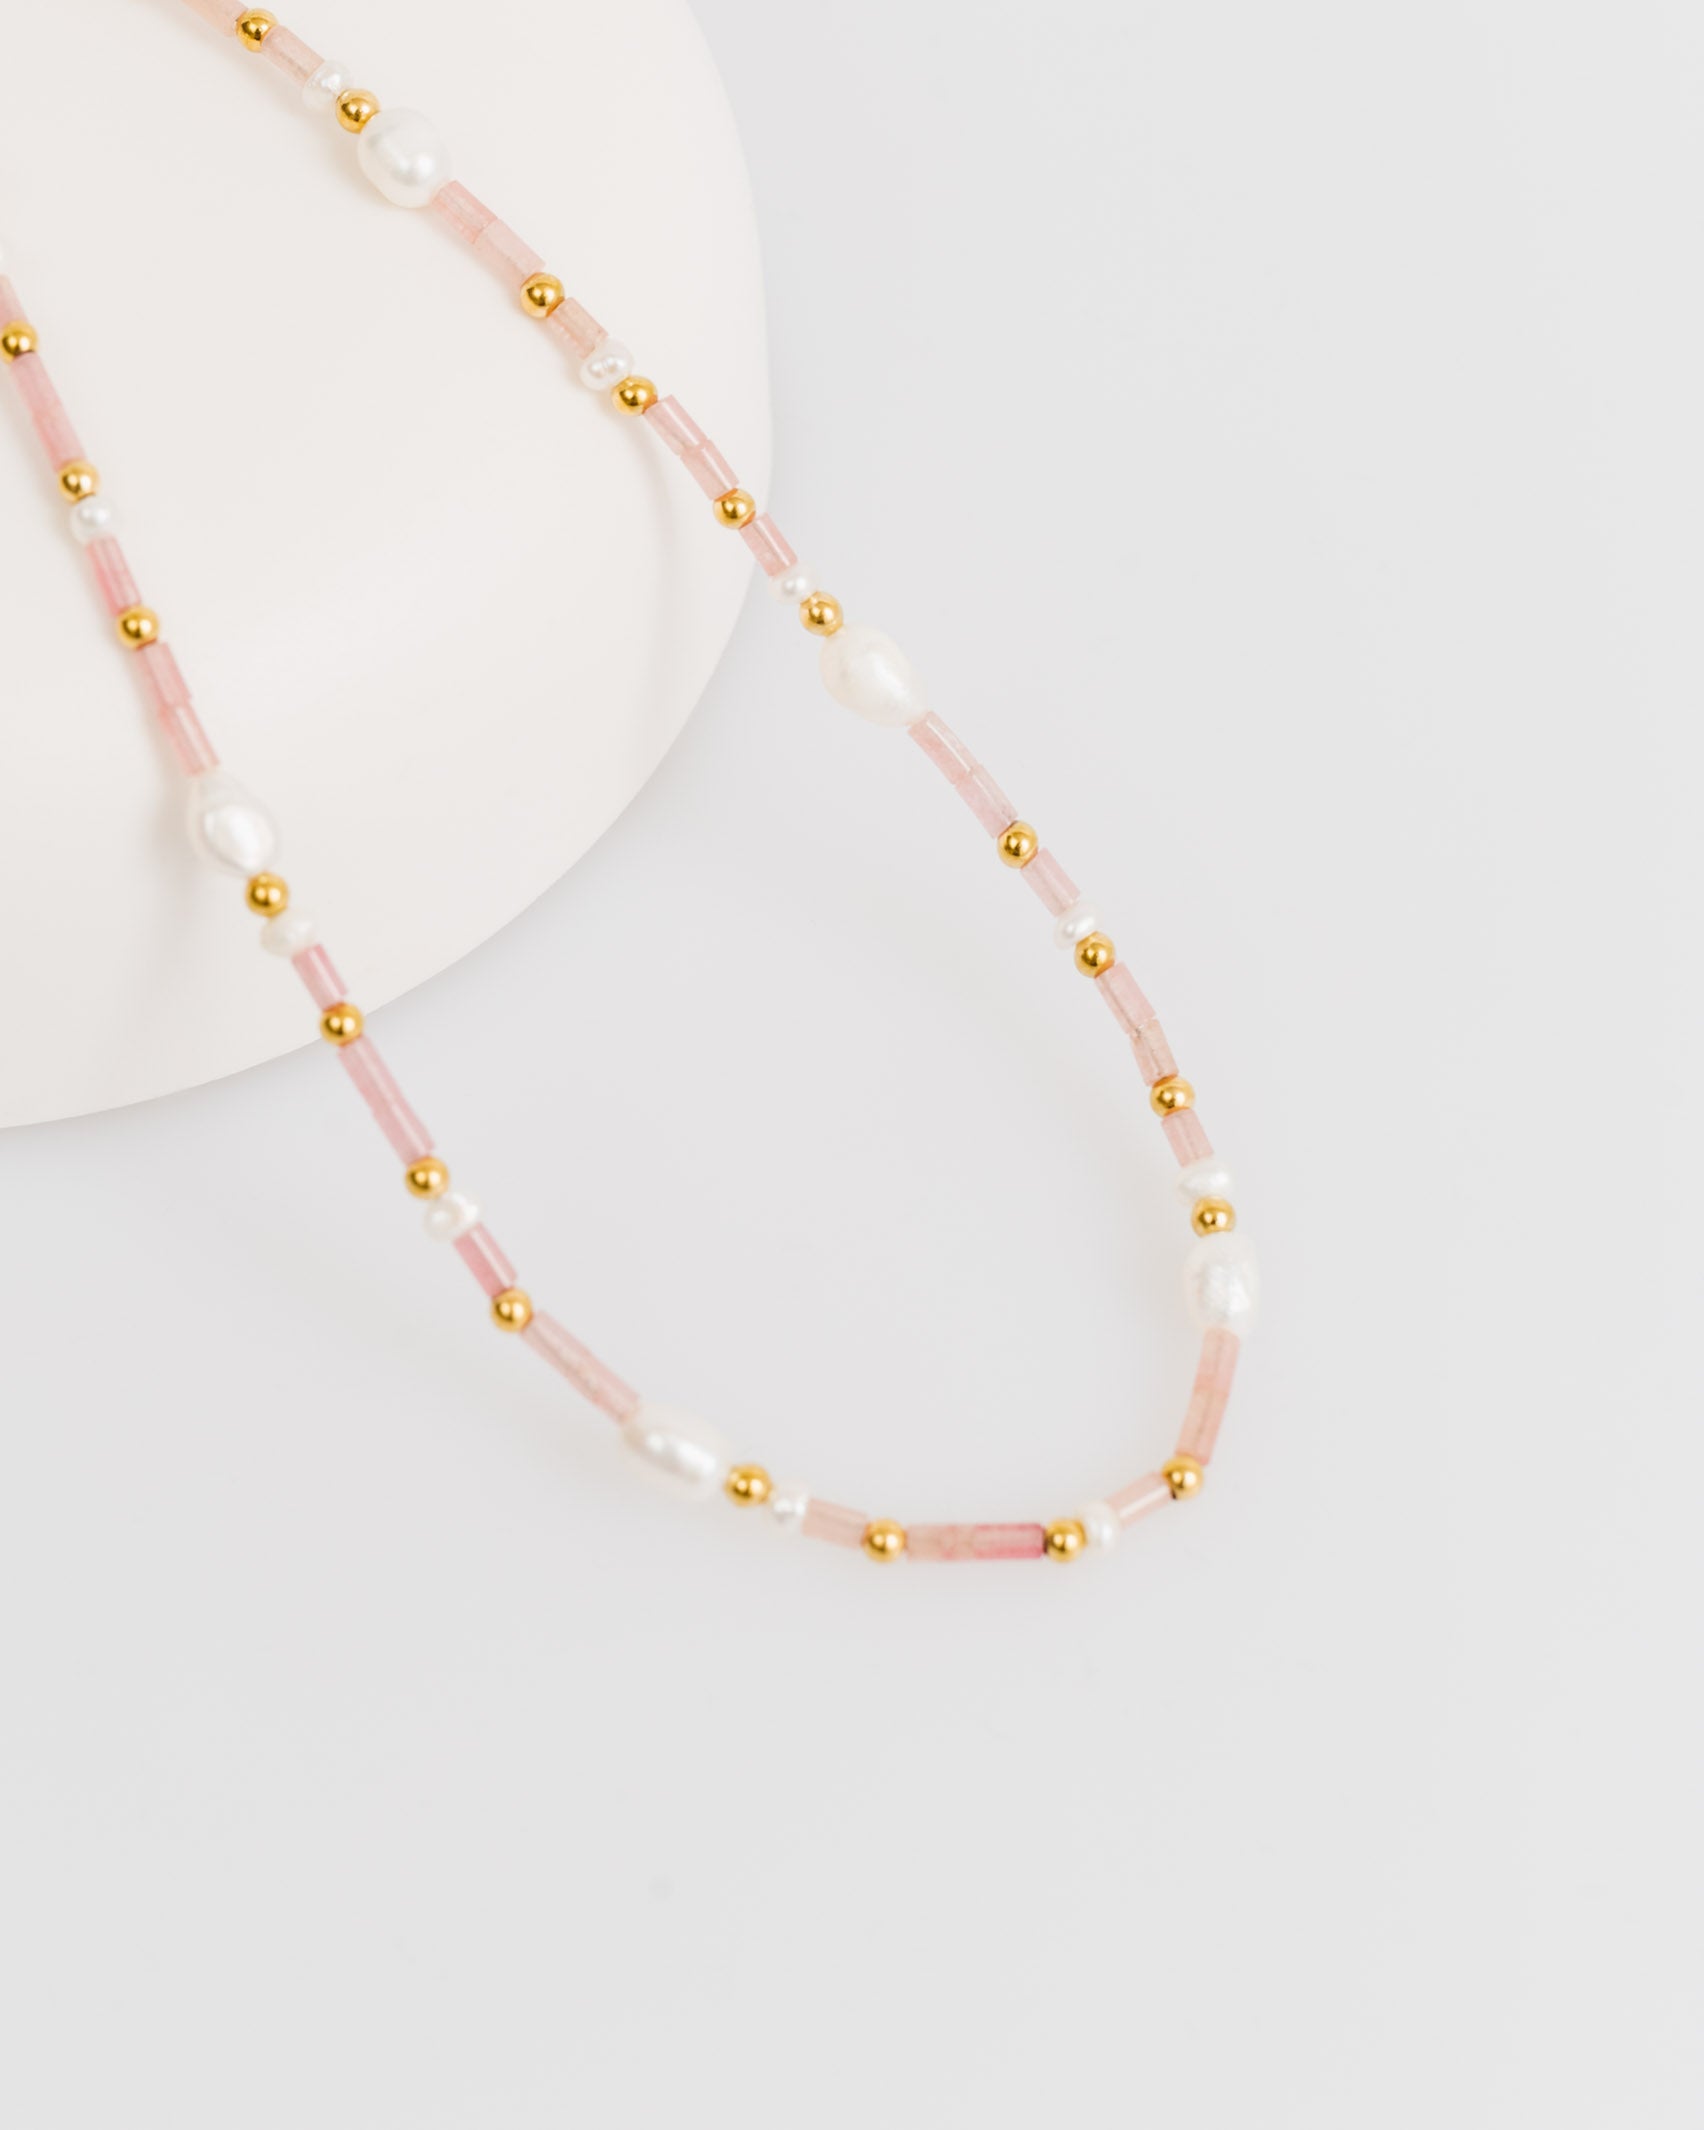 Perlenkette in Pastelltönen - Broke + Schön